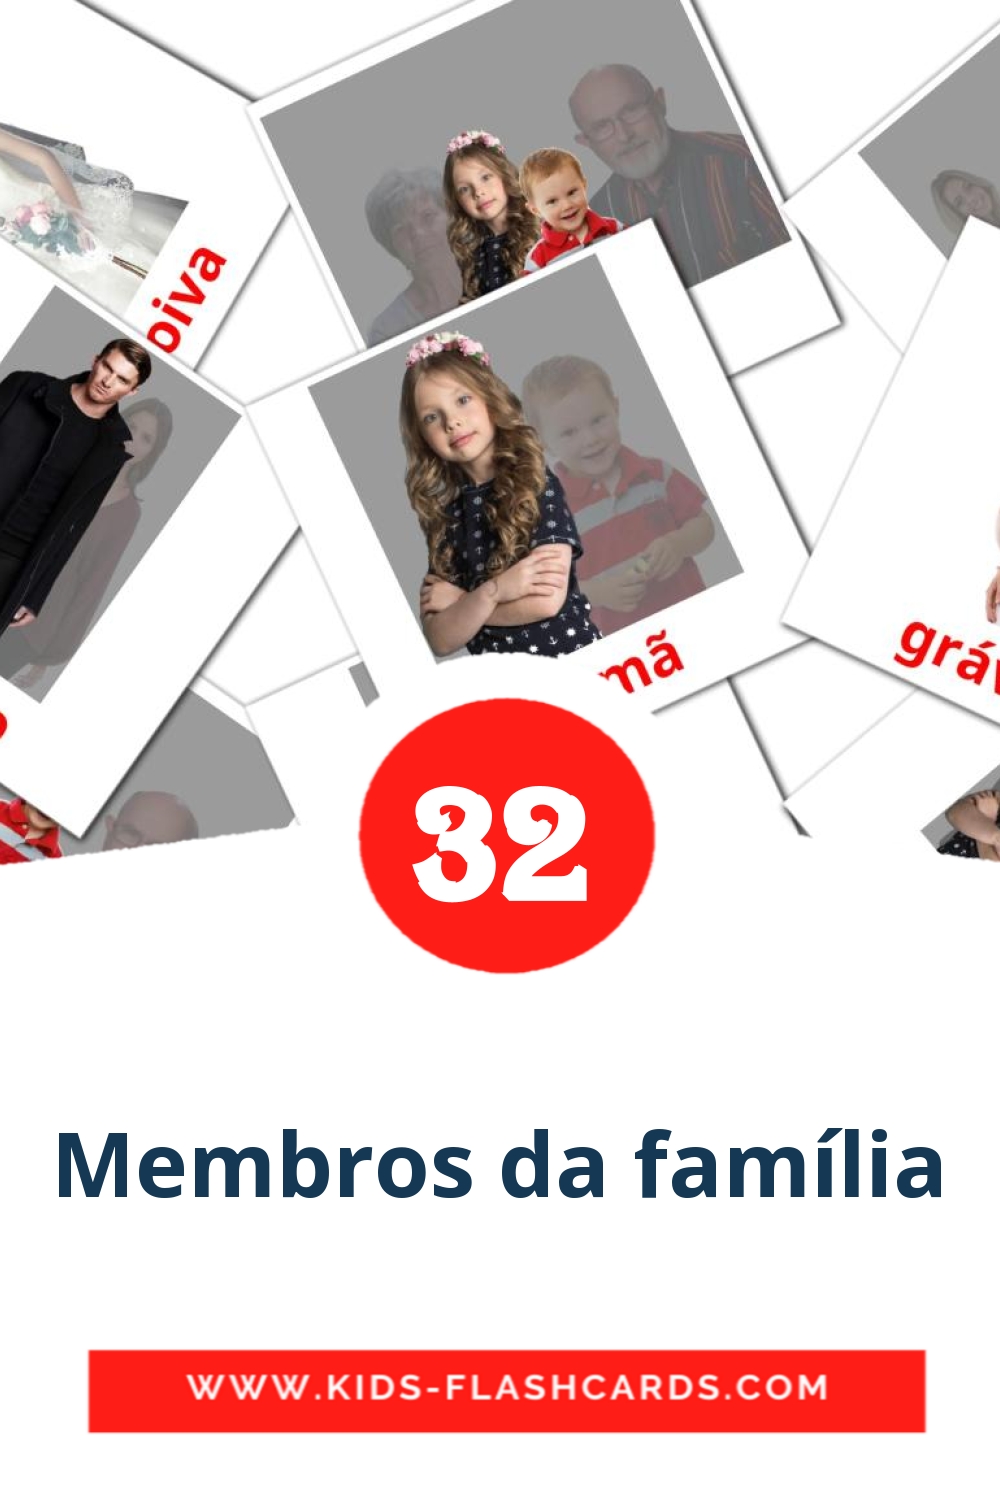 Membros da família на португальском для Детского Сада (32 карточки)